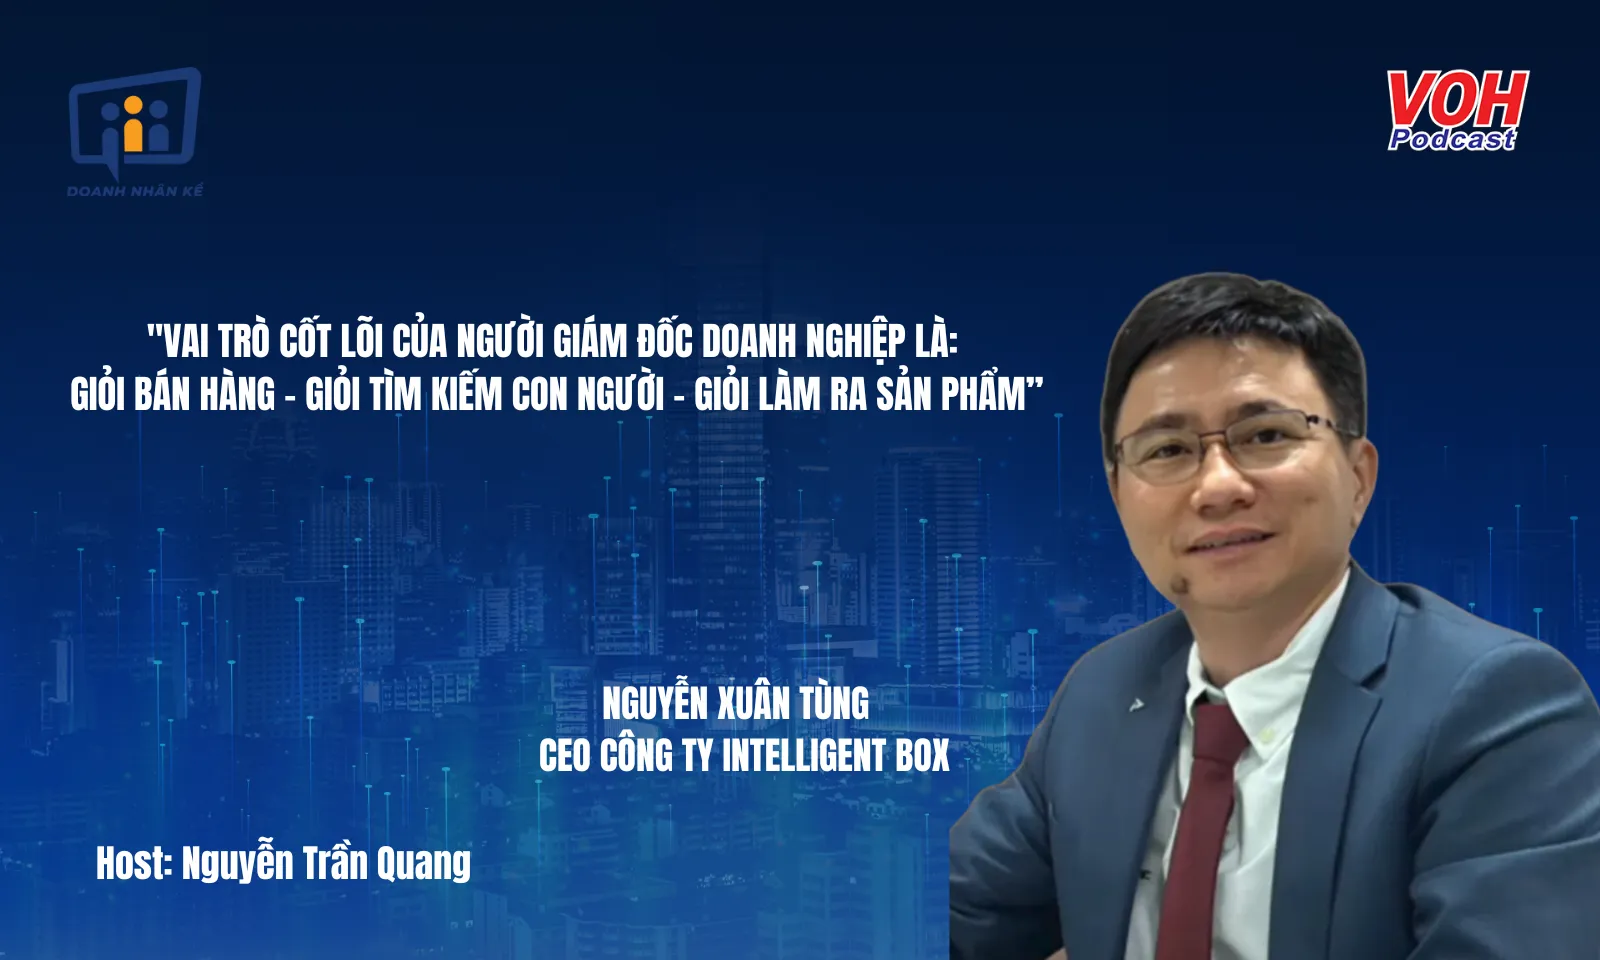 CEO Intelligent Box Nguyễn Xuân Tùng: Chuyển đổi sáng tạo trong ngành bao bì thông minh  | DNK #151